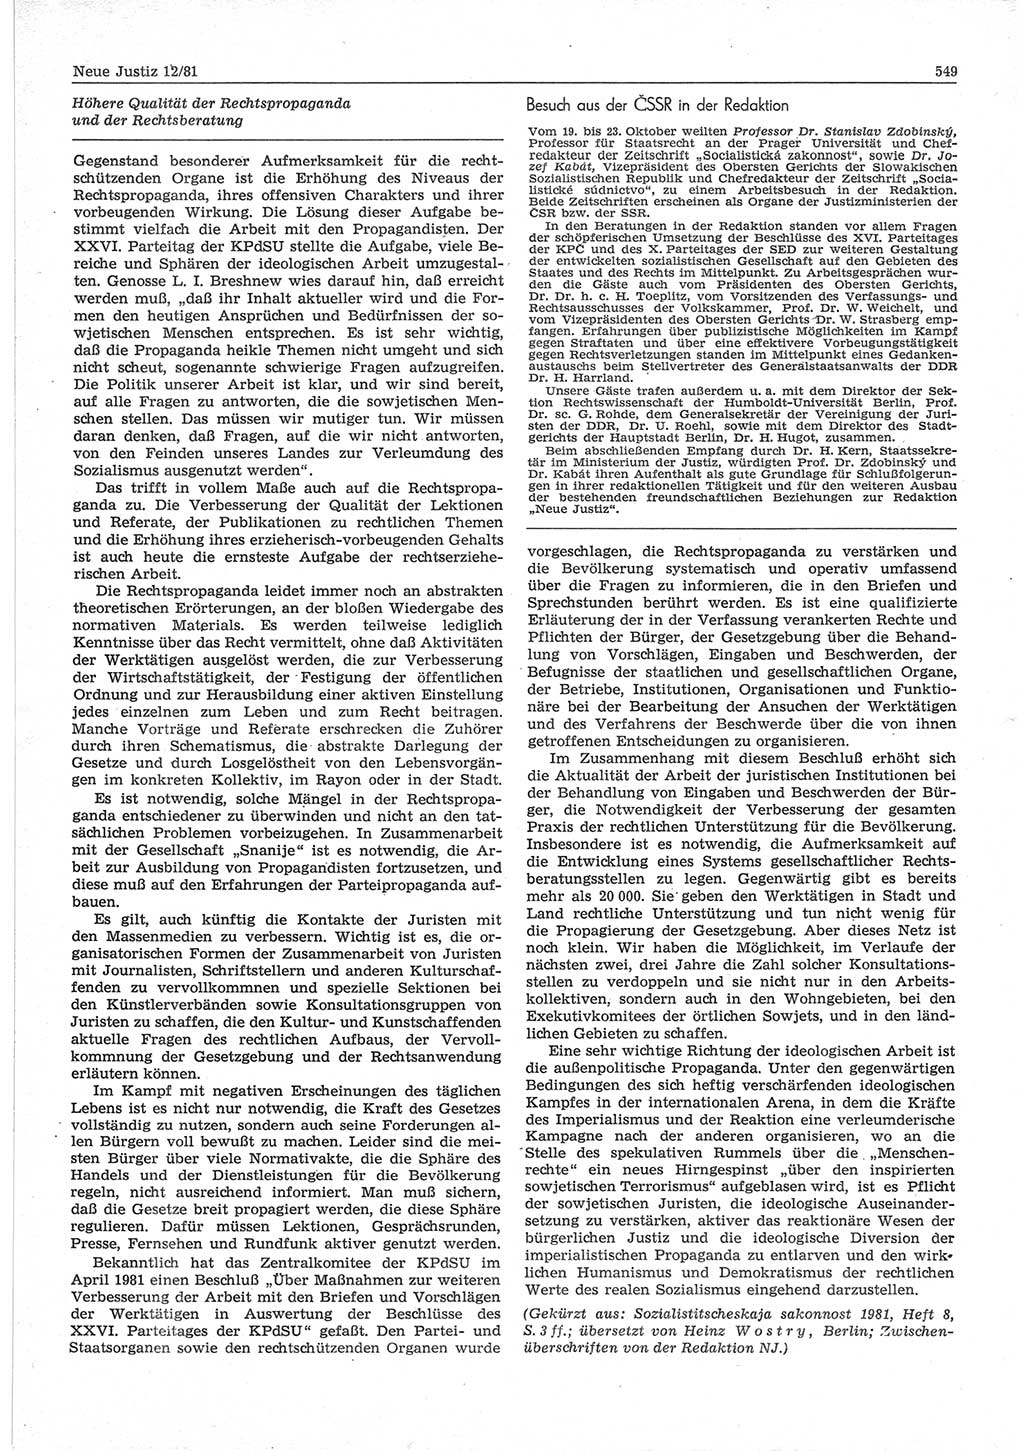 Neue Justiz (NJ), Zeitschrift für sozialistisches Recht und Gesetzlichkeit [Deutsche Demokratische Republik (DDR)], 35. Jahrgang 1981, Seite 549 (NJ DDR 1981, S. 549)